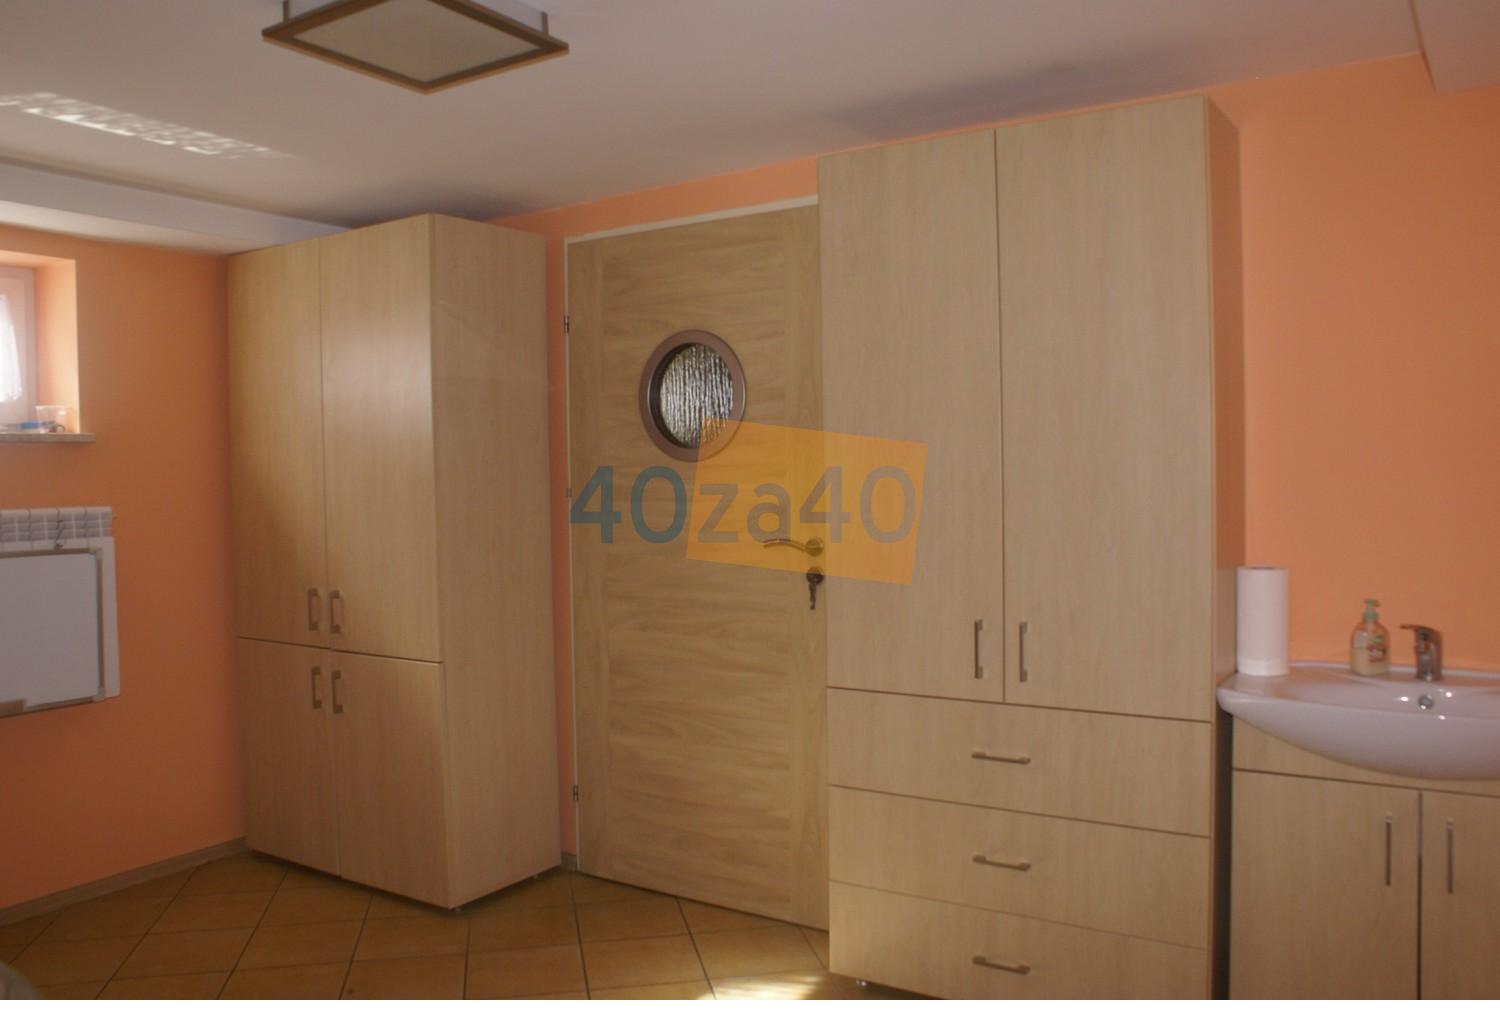 Dom na sprzedaż, powierzchnia: 350 m2, pokoje: 6, cena: 449 000,00 PLN, Turek, kontakt: 607 396 433